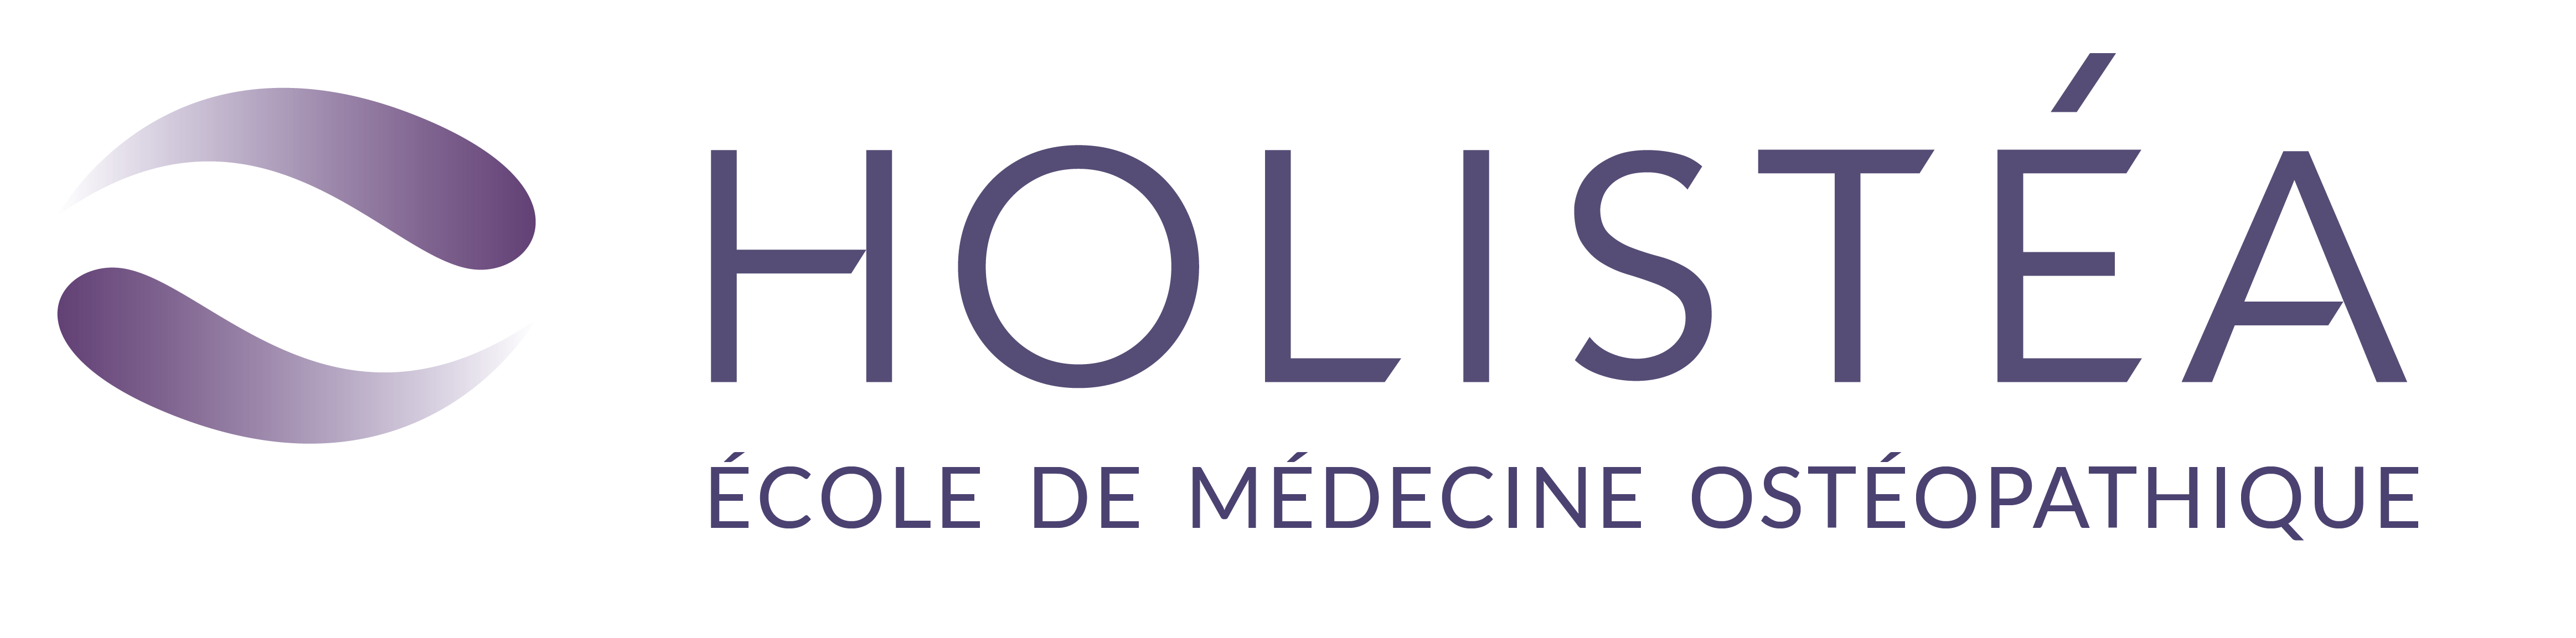 HOLISTÉA – école de médecine ostéopathique